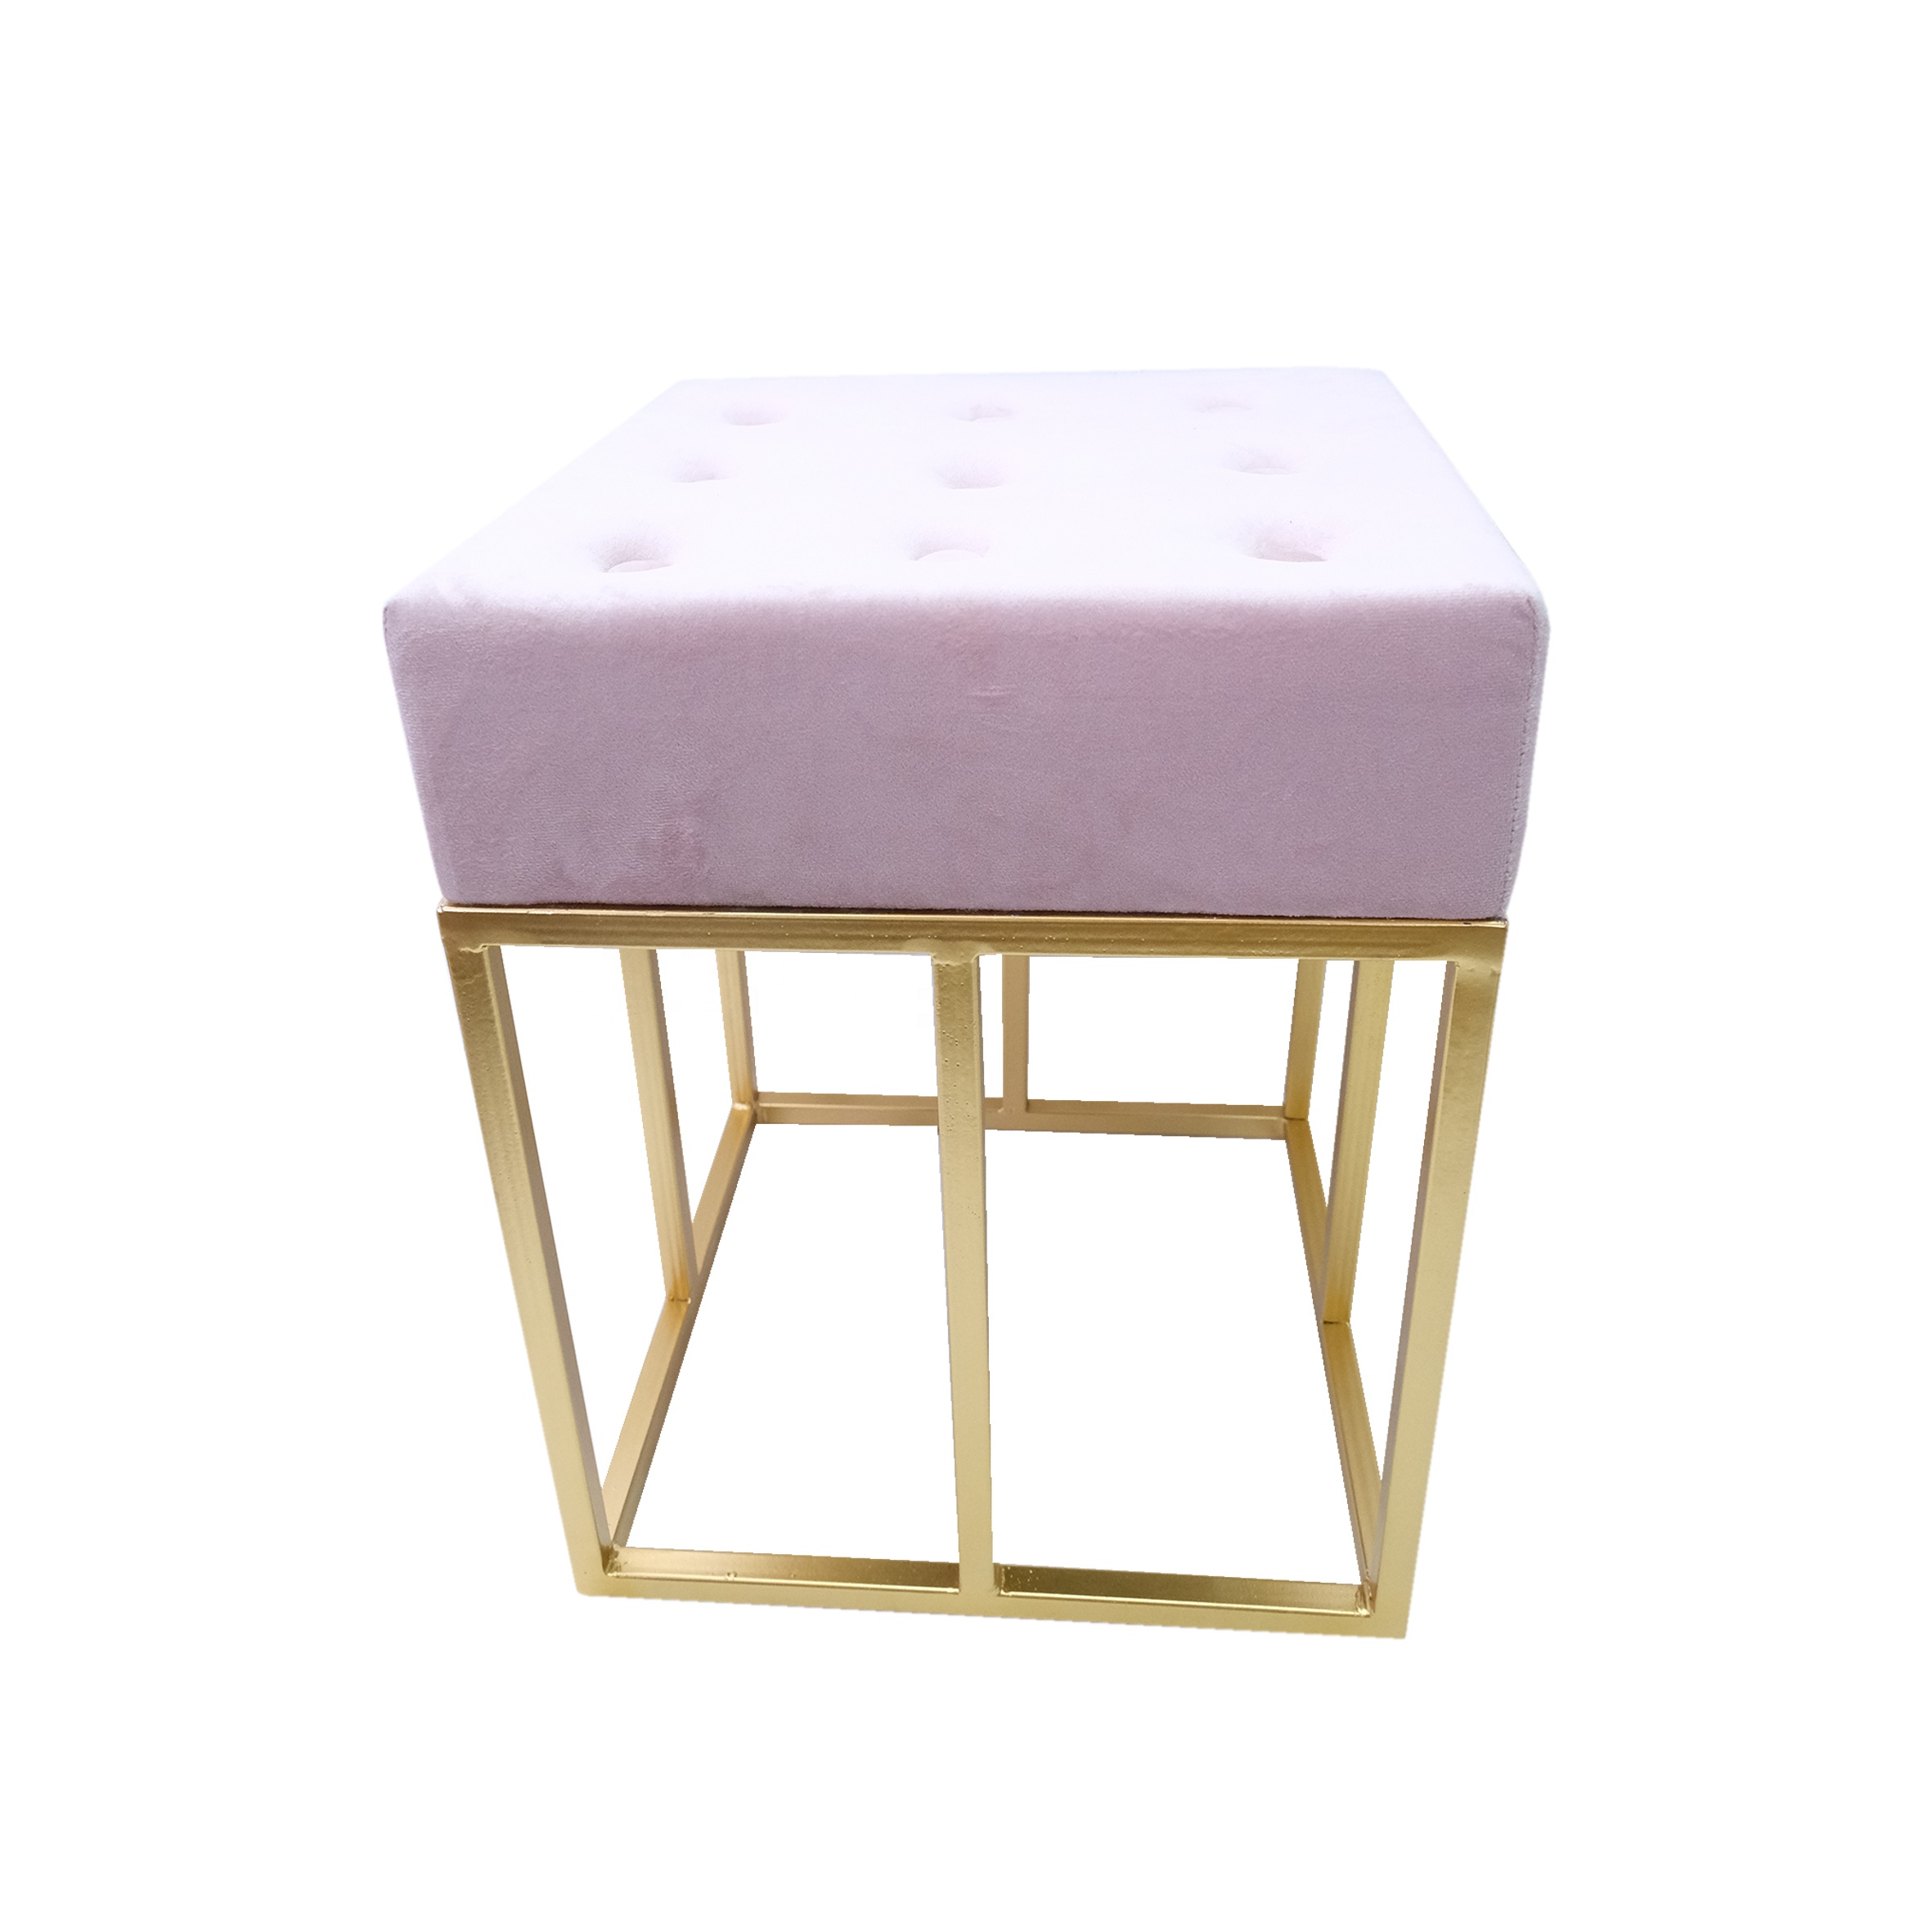 Modern Living Room luxury chair velvet stool & ottomans with metal legs